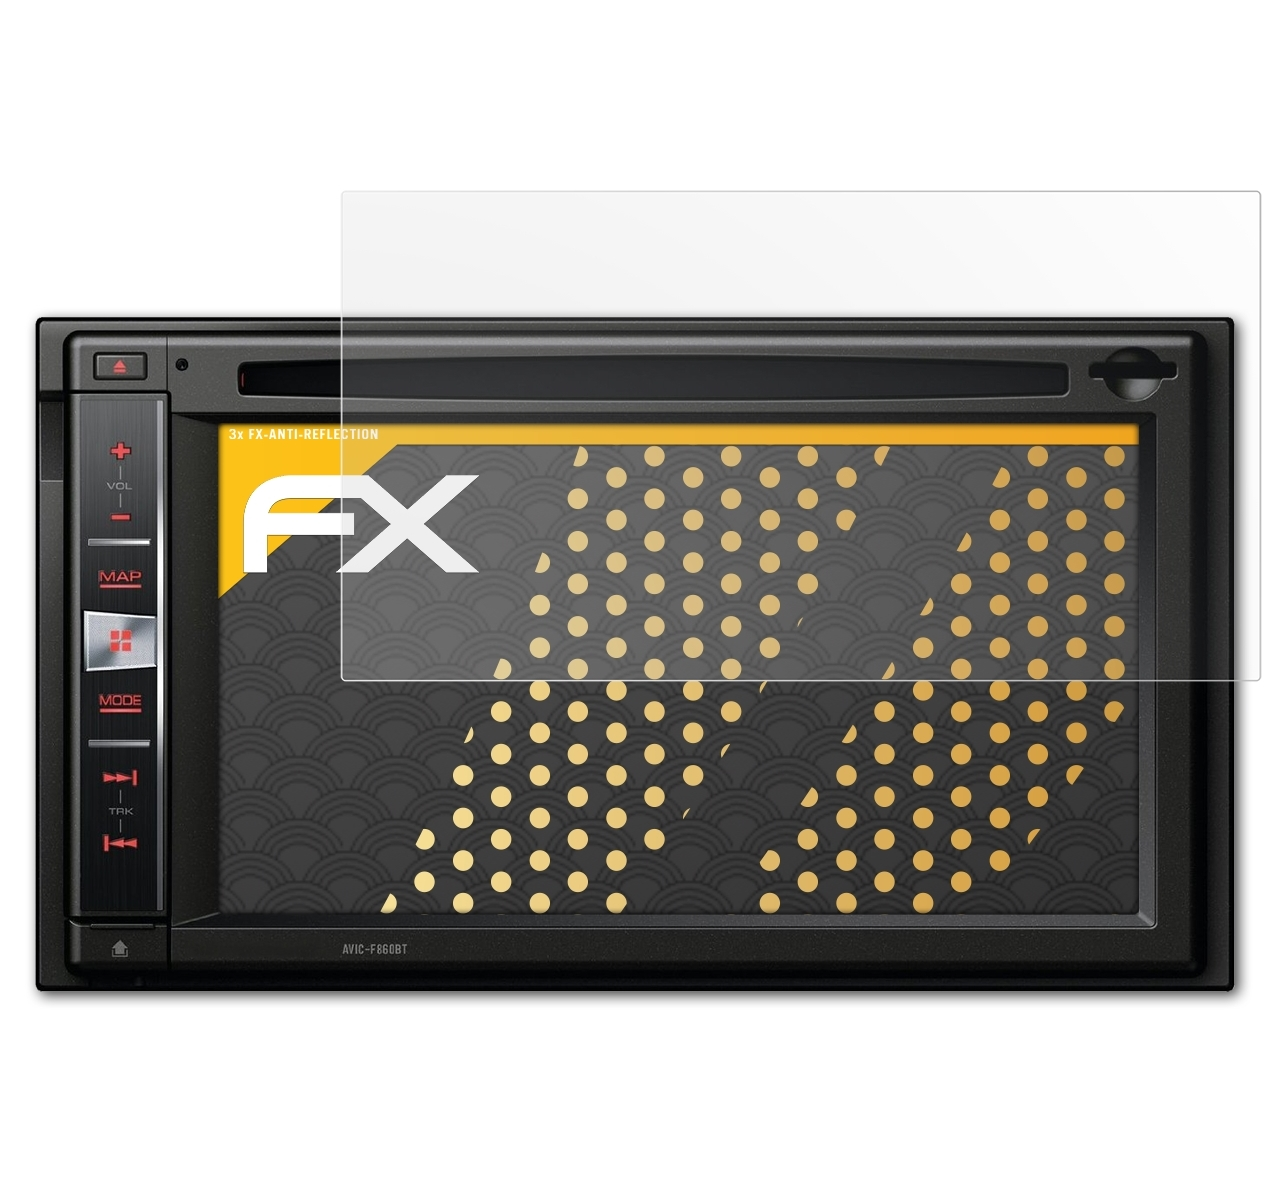 3x Pioneer FX-Antireflex Avic-F860BT) ATFOLIX Displayschutz(für